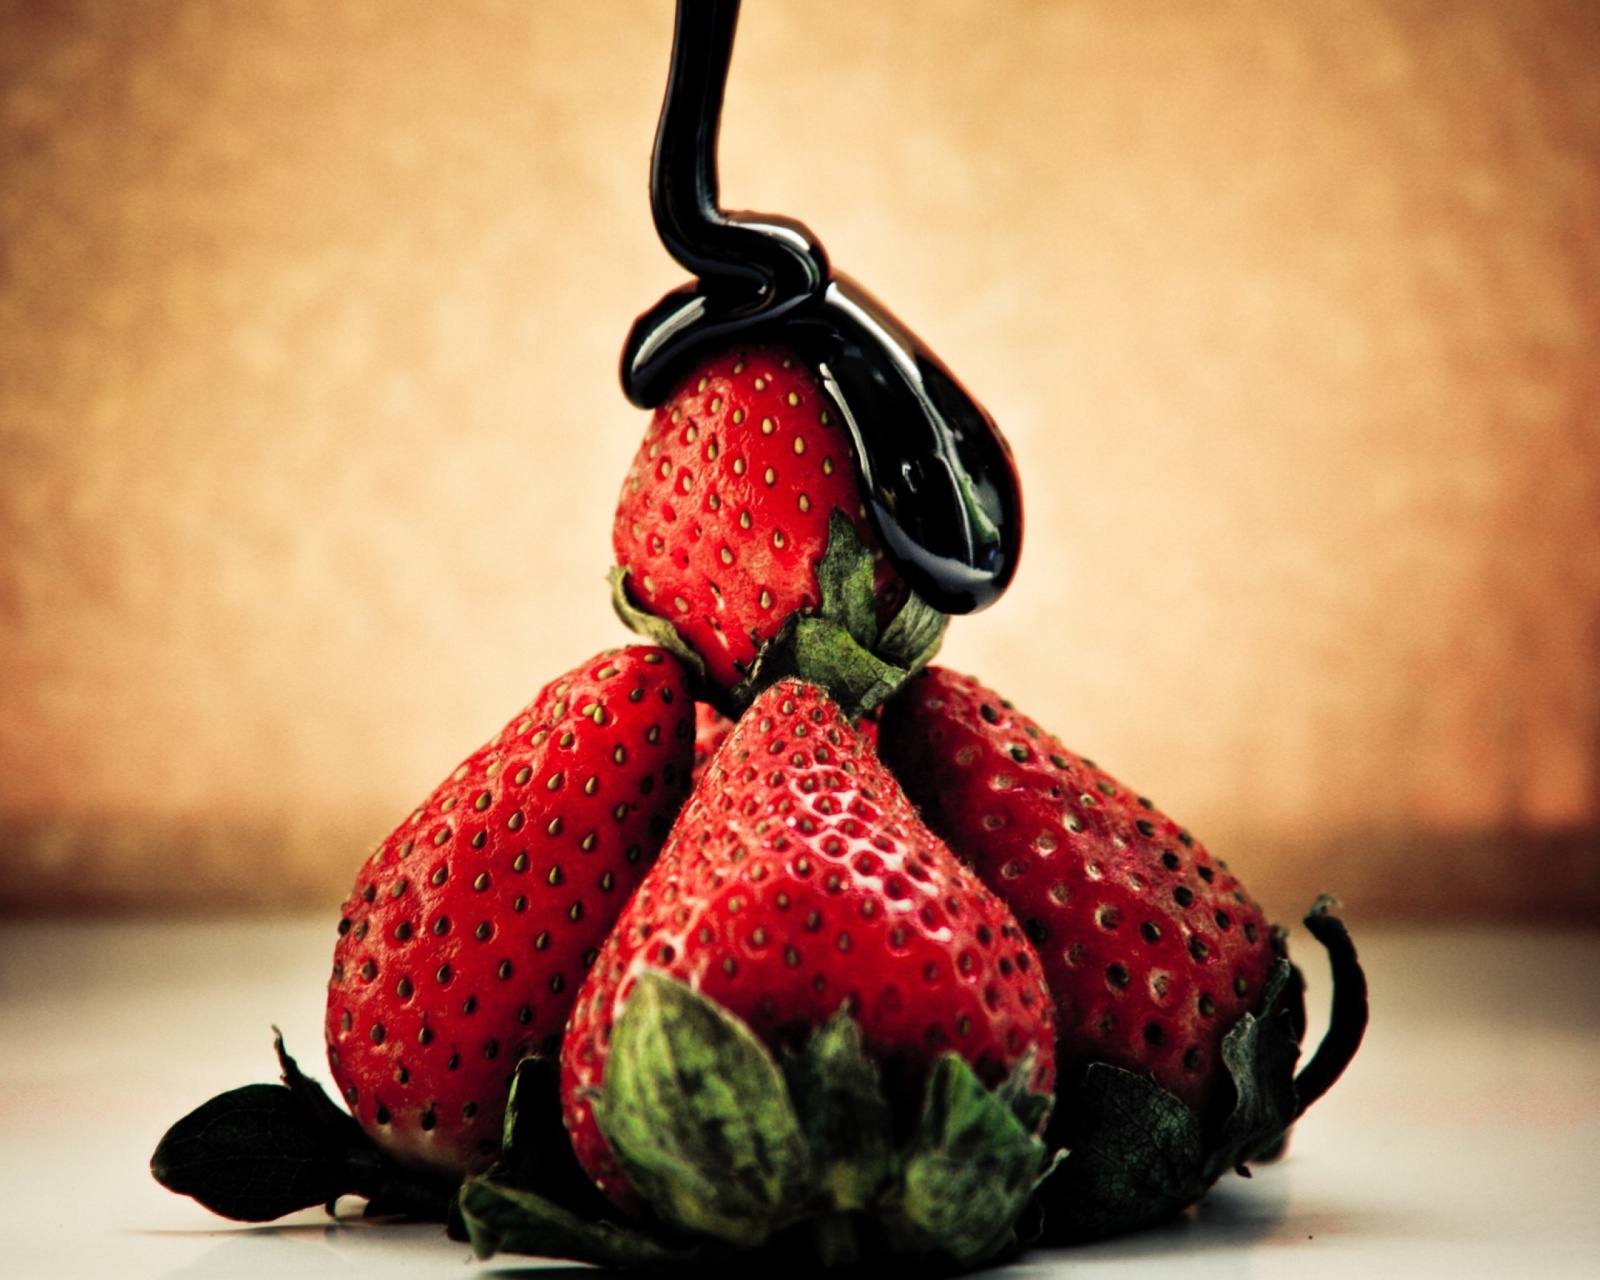 Strawberries with chocolate screenshot #1 1600x1280